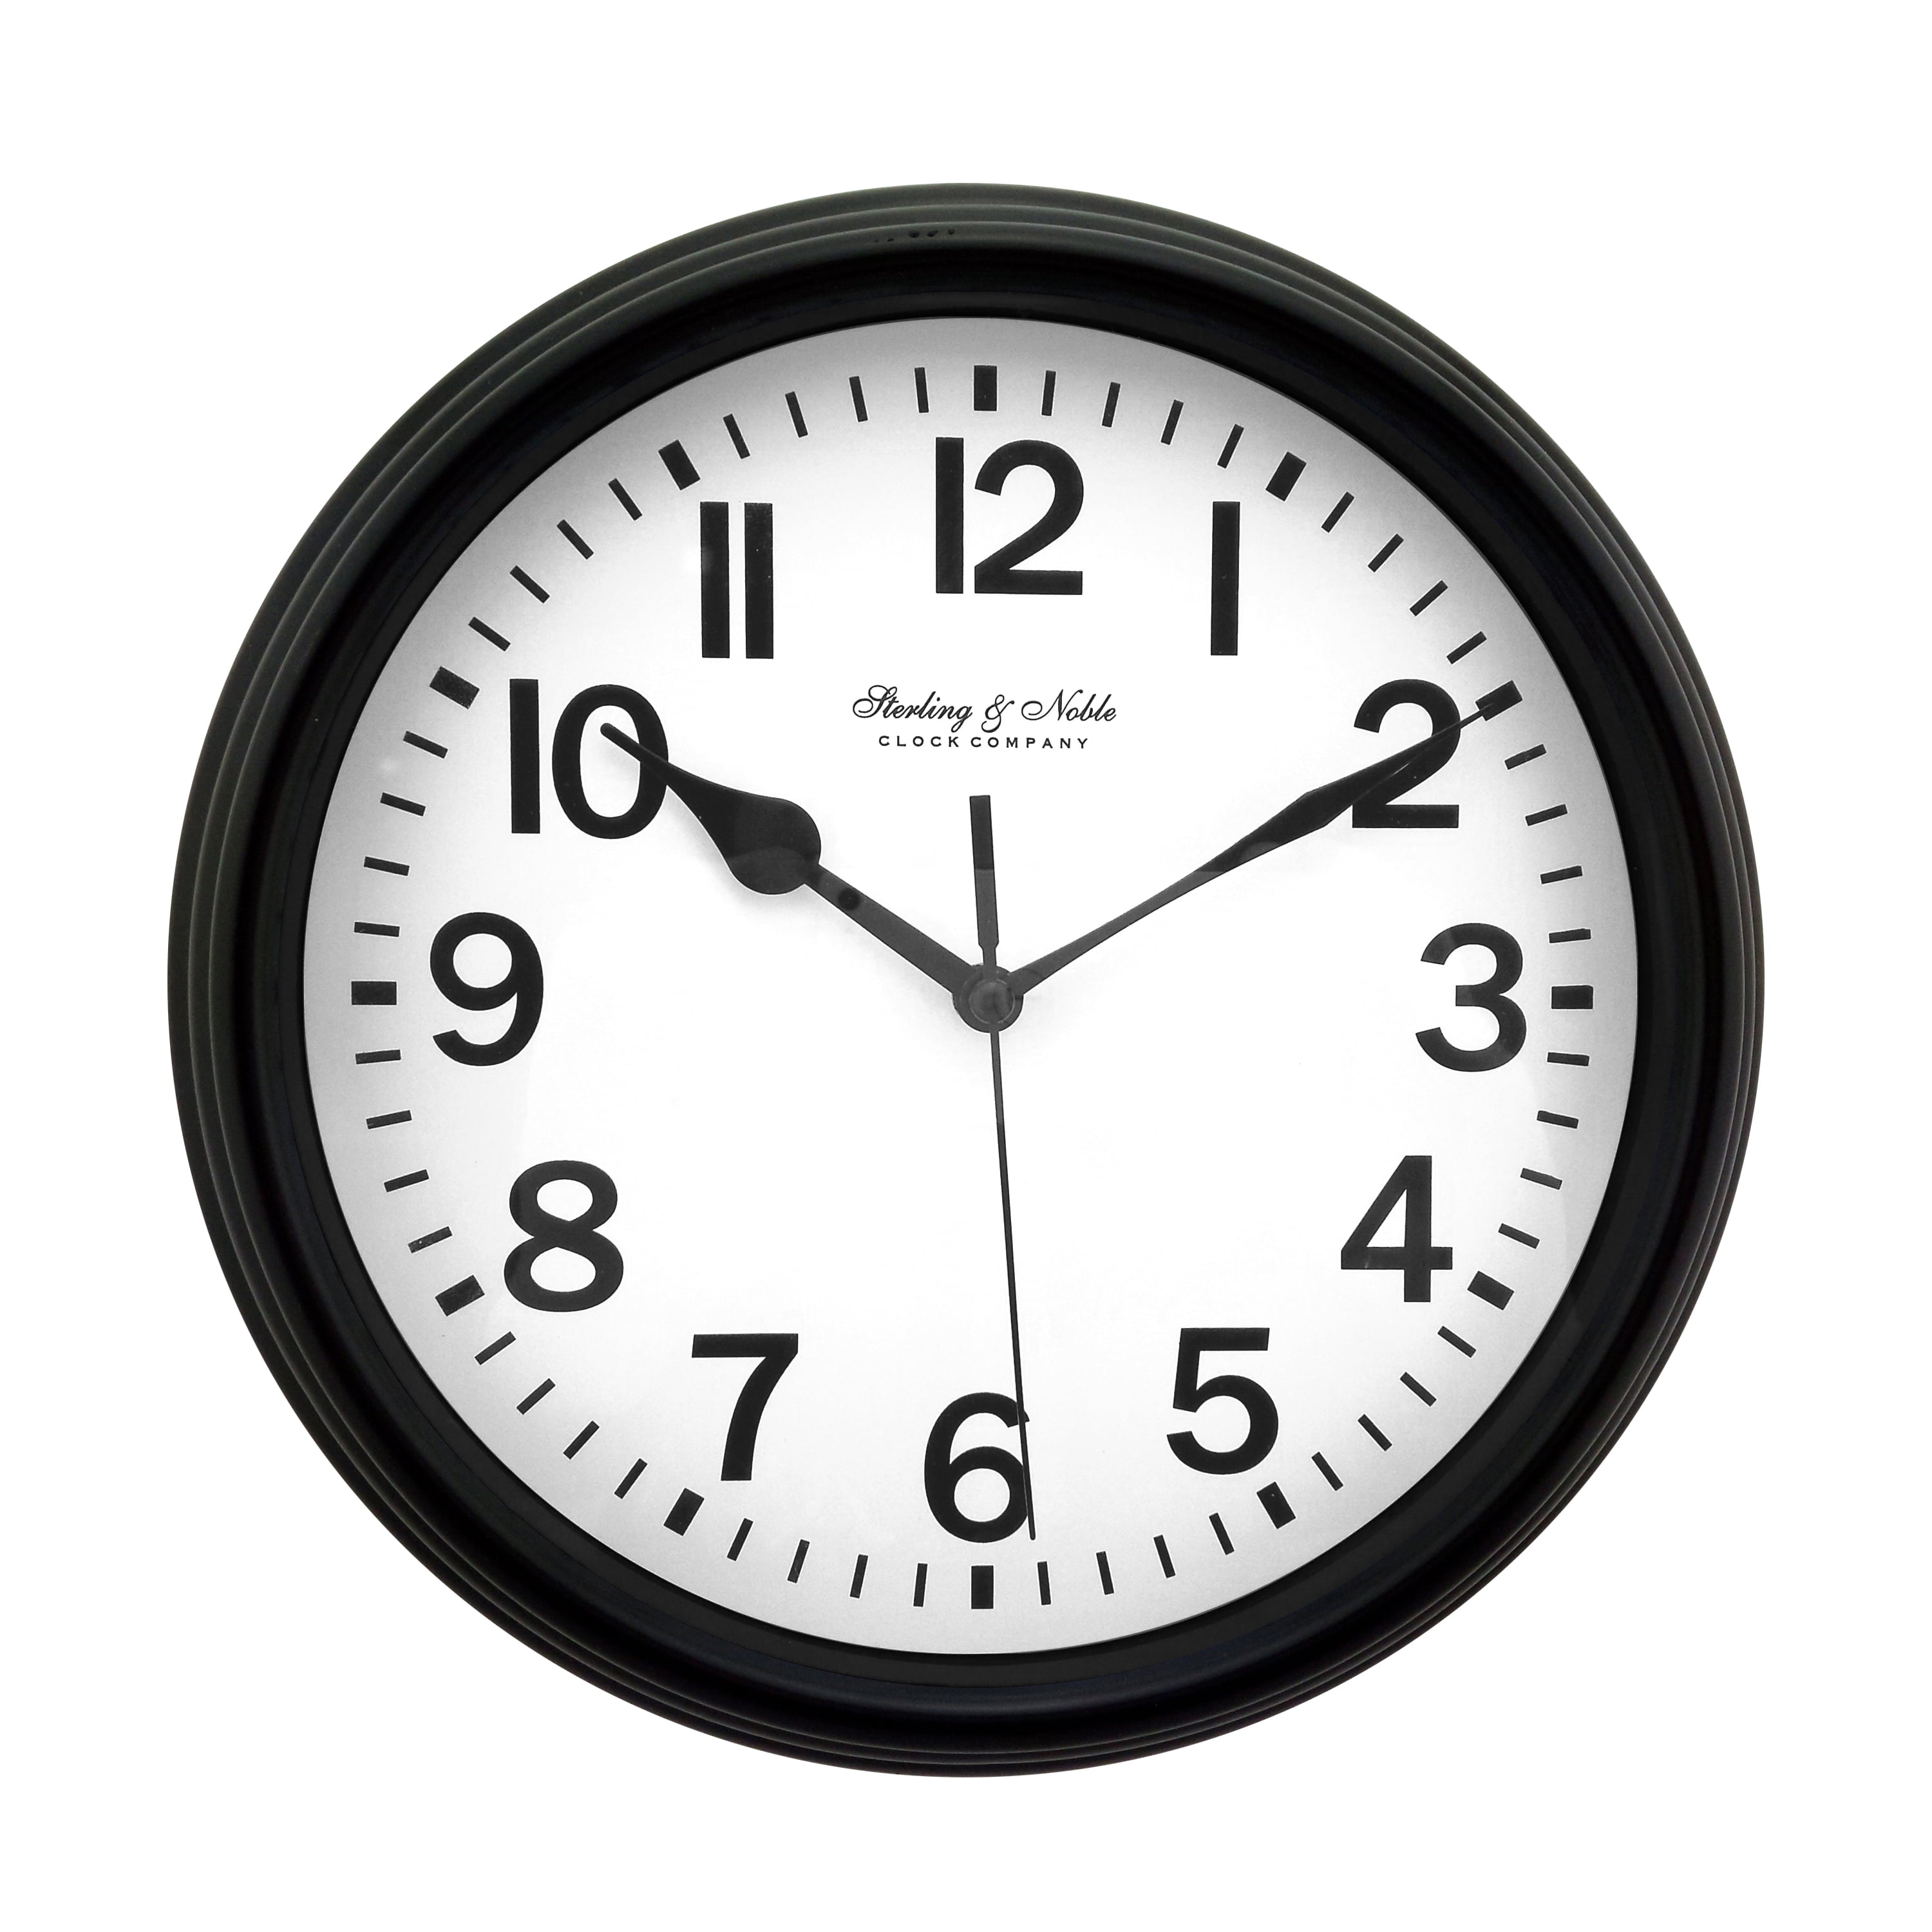 Mainstays 8.78" Basic Clock Black 